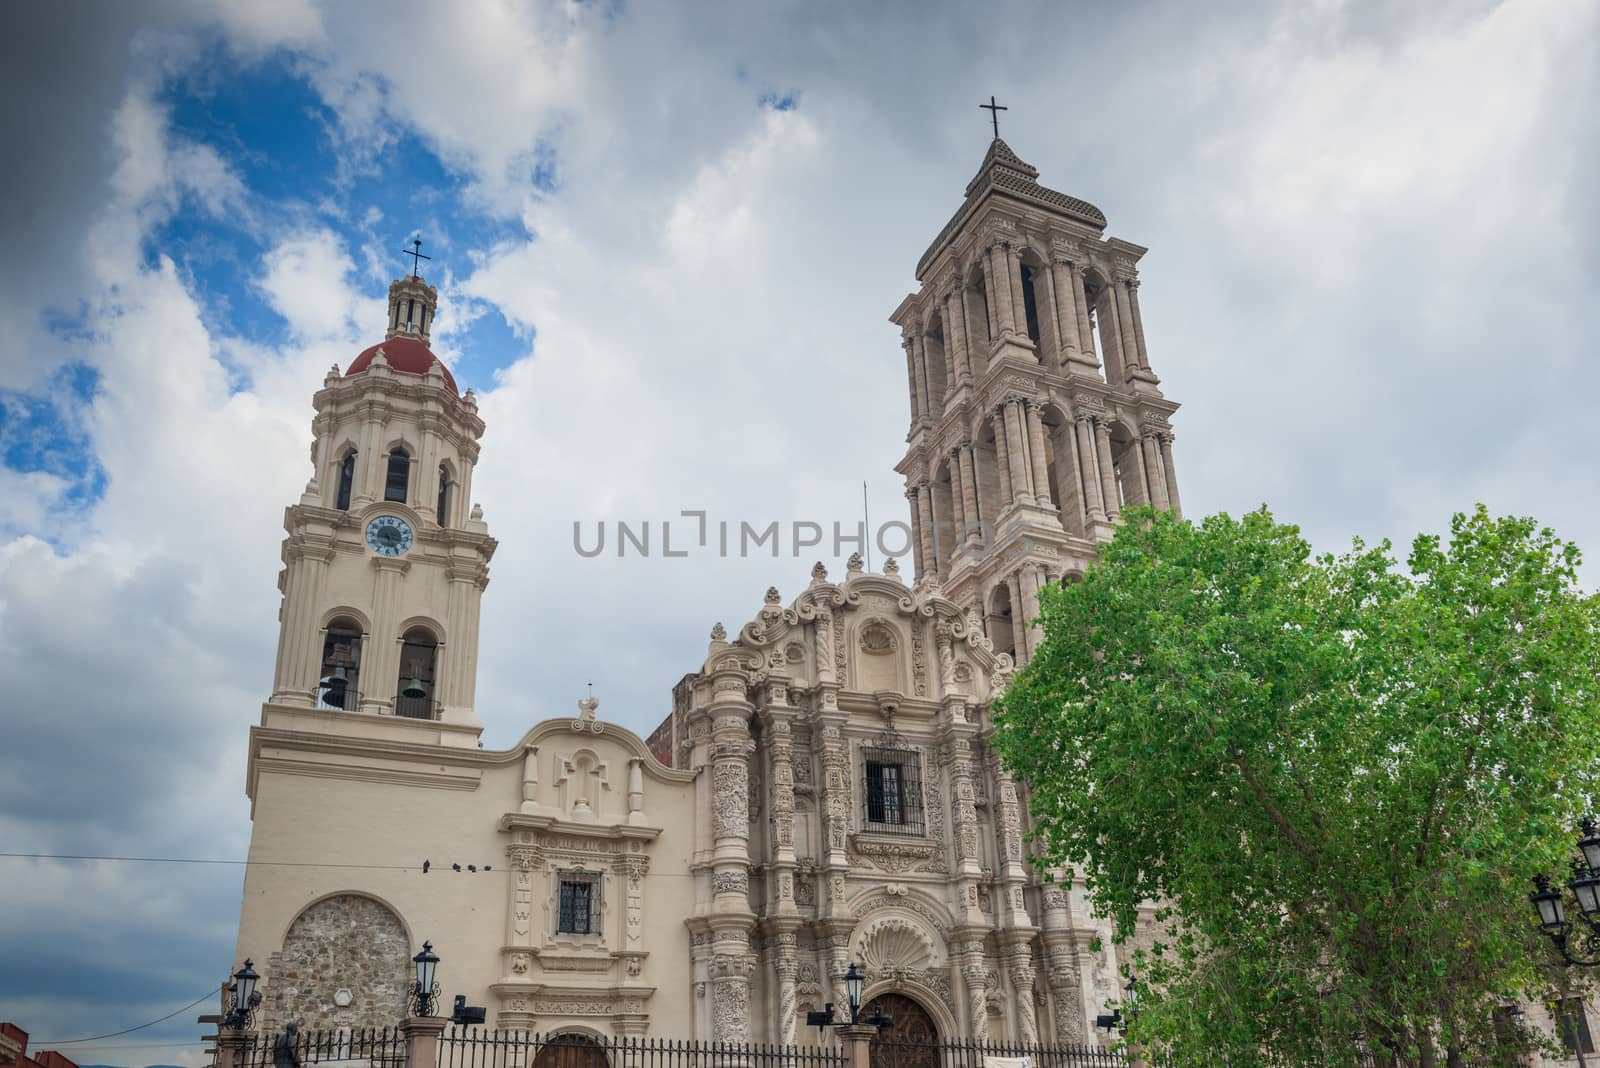 Cathedral de Santiago in Saltillo, Mexico by Marcus